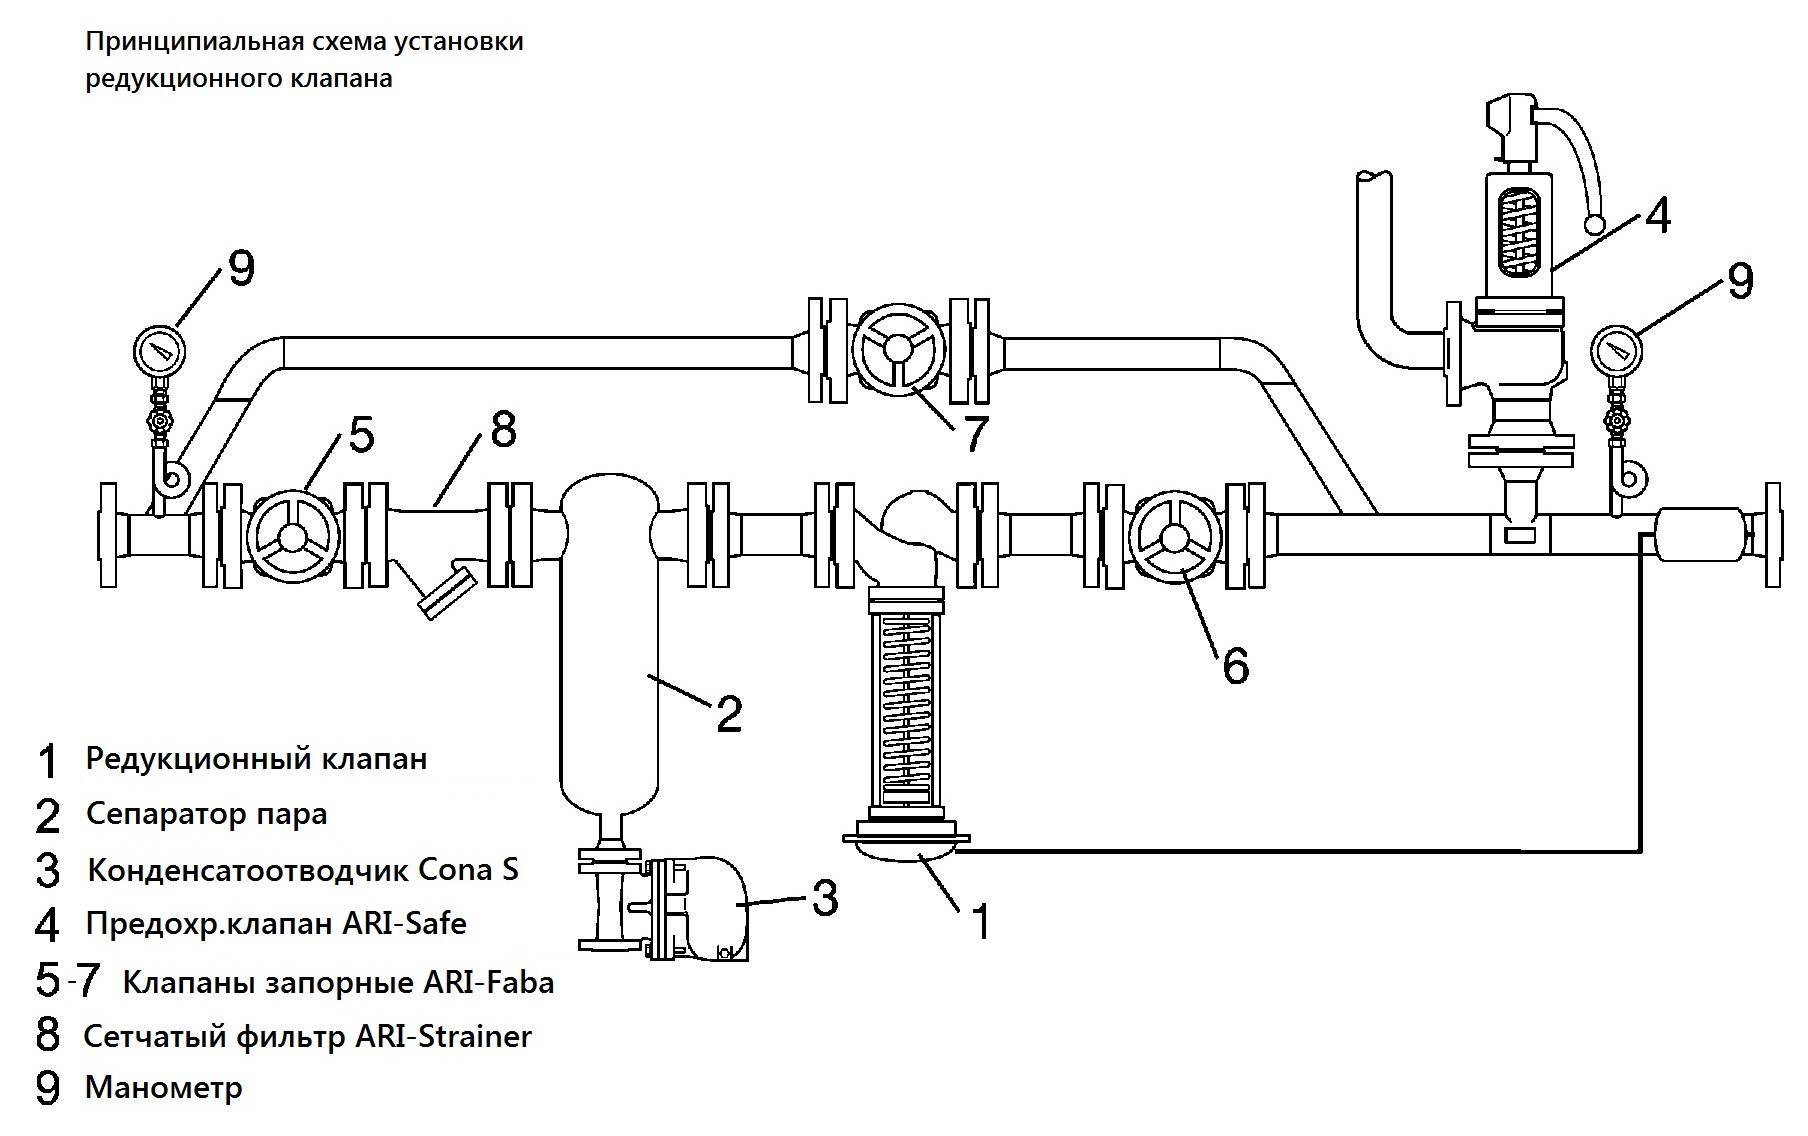 Предохранительный клапан в отоплении, установка, работа, конструкции